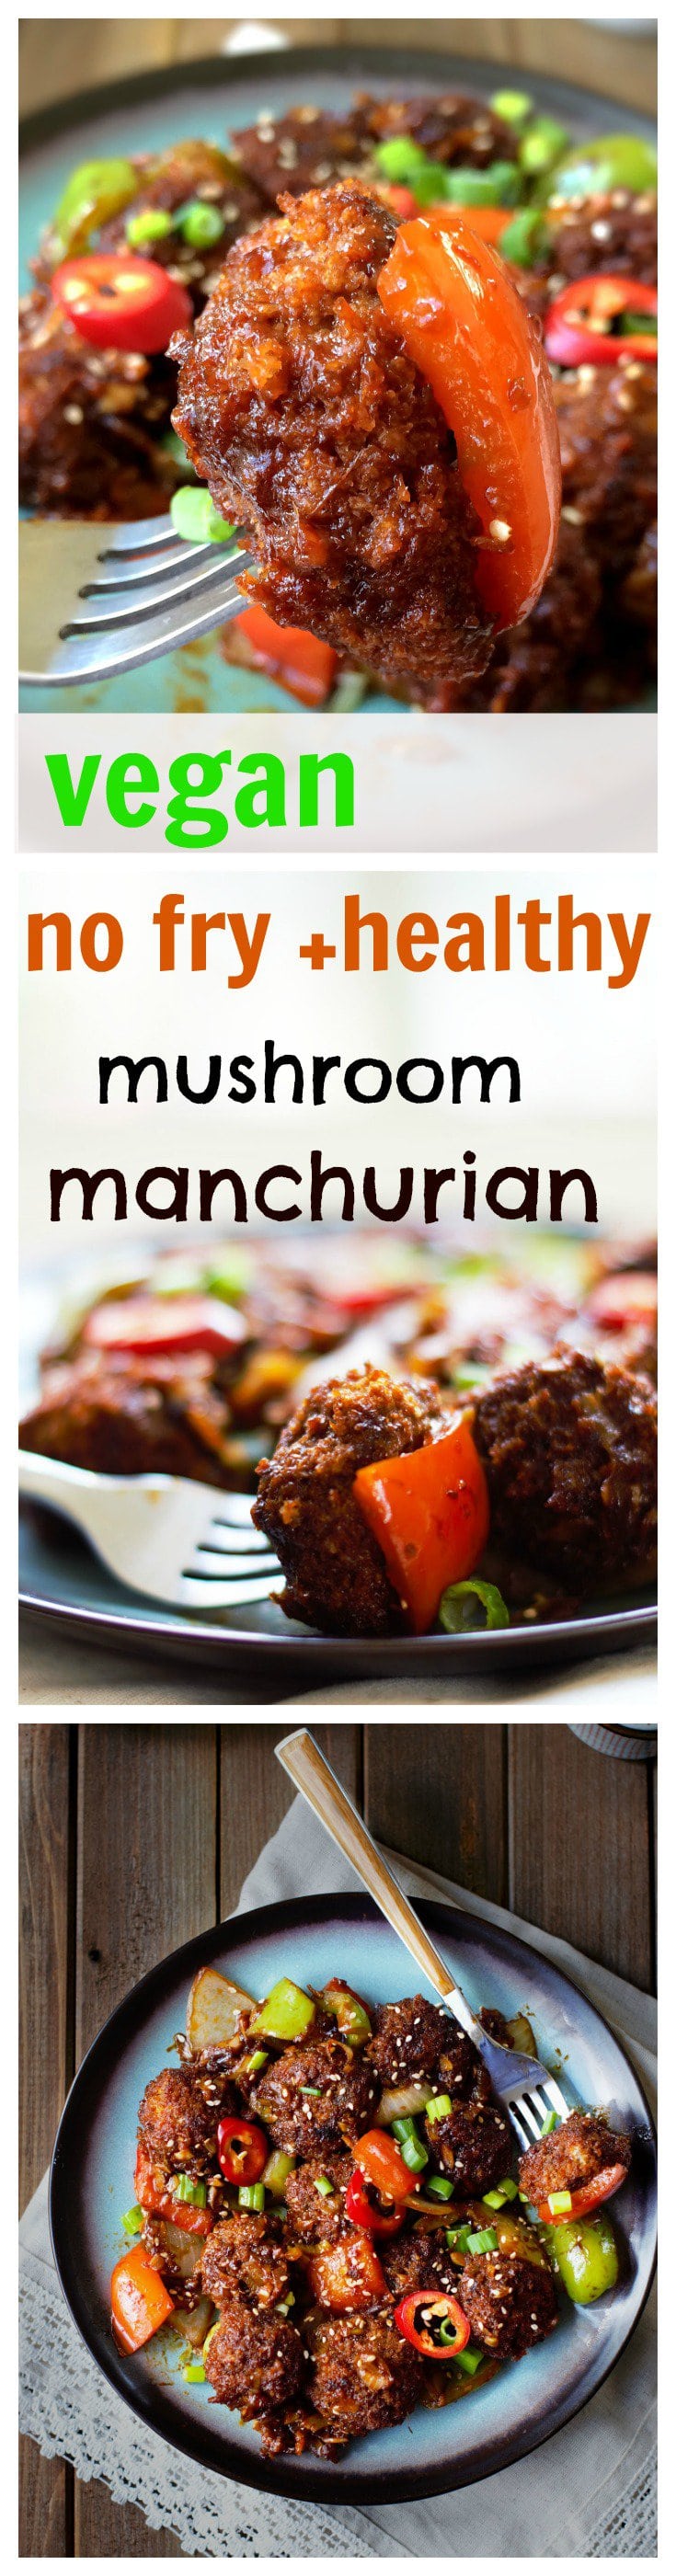 No fry vegan mushroom manchurian - indo chinese